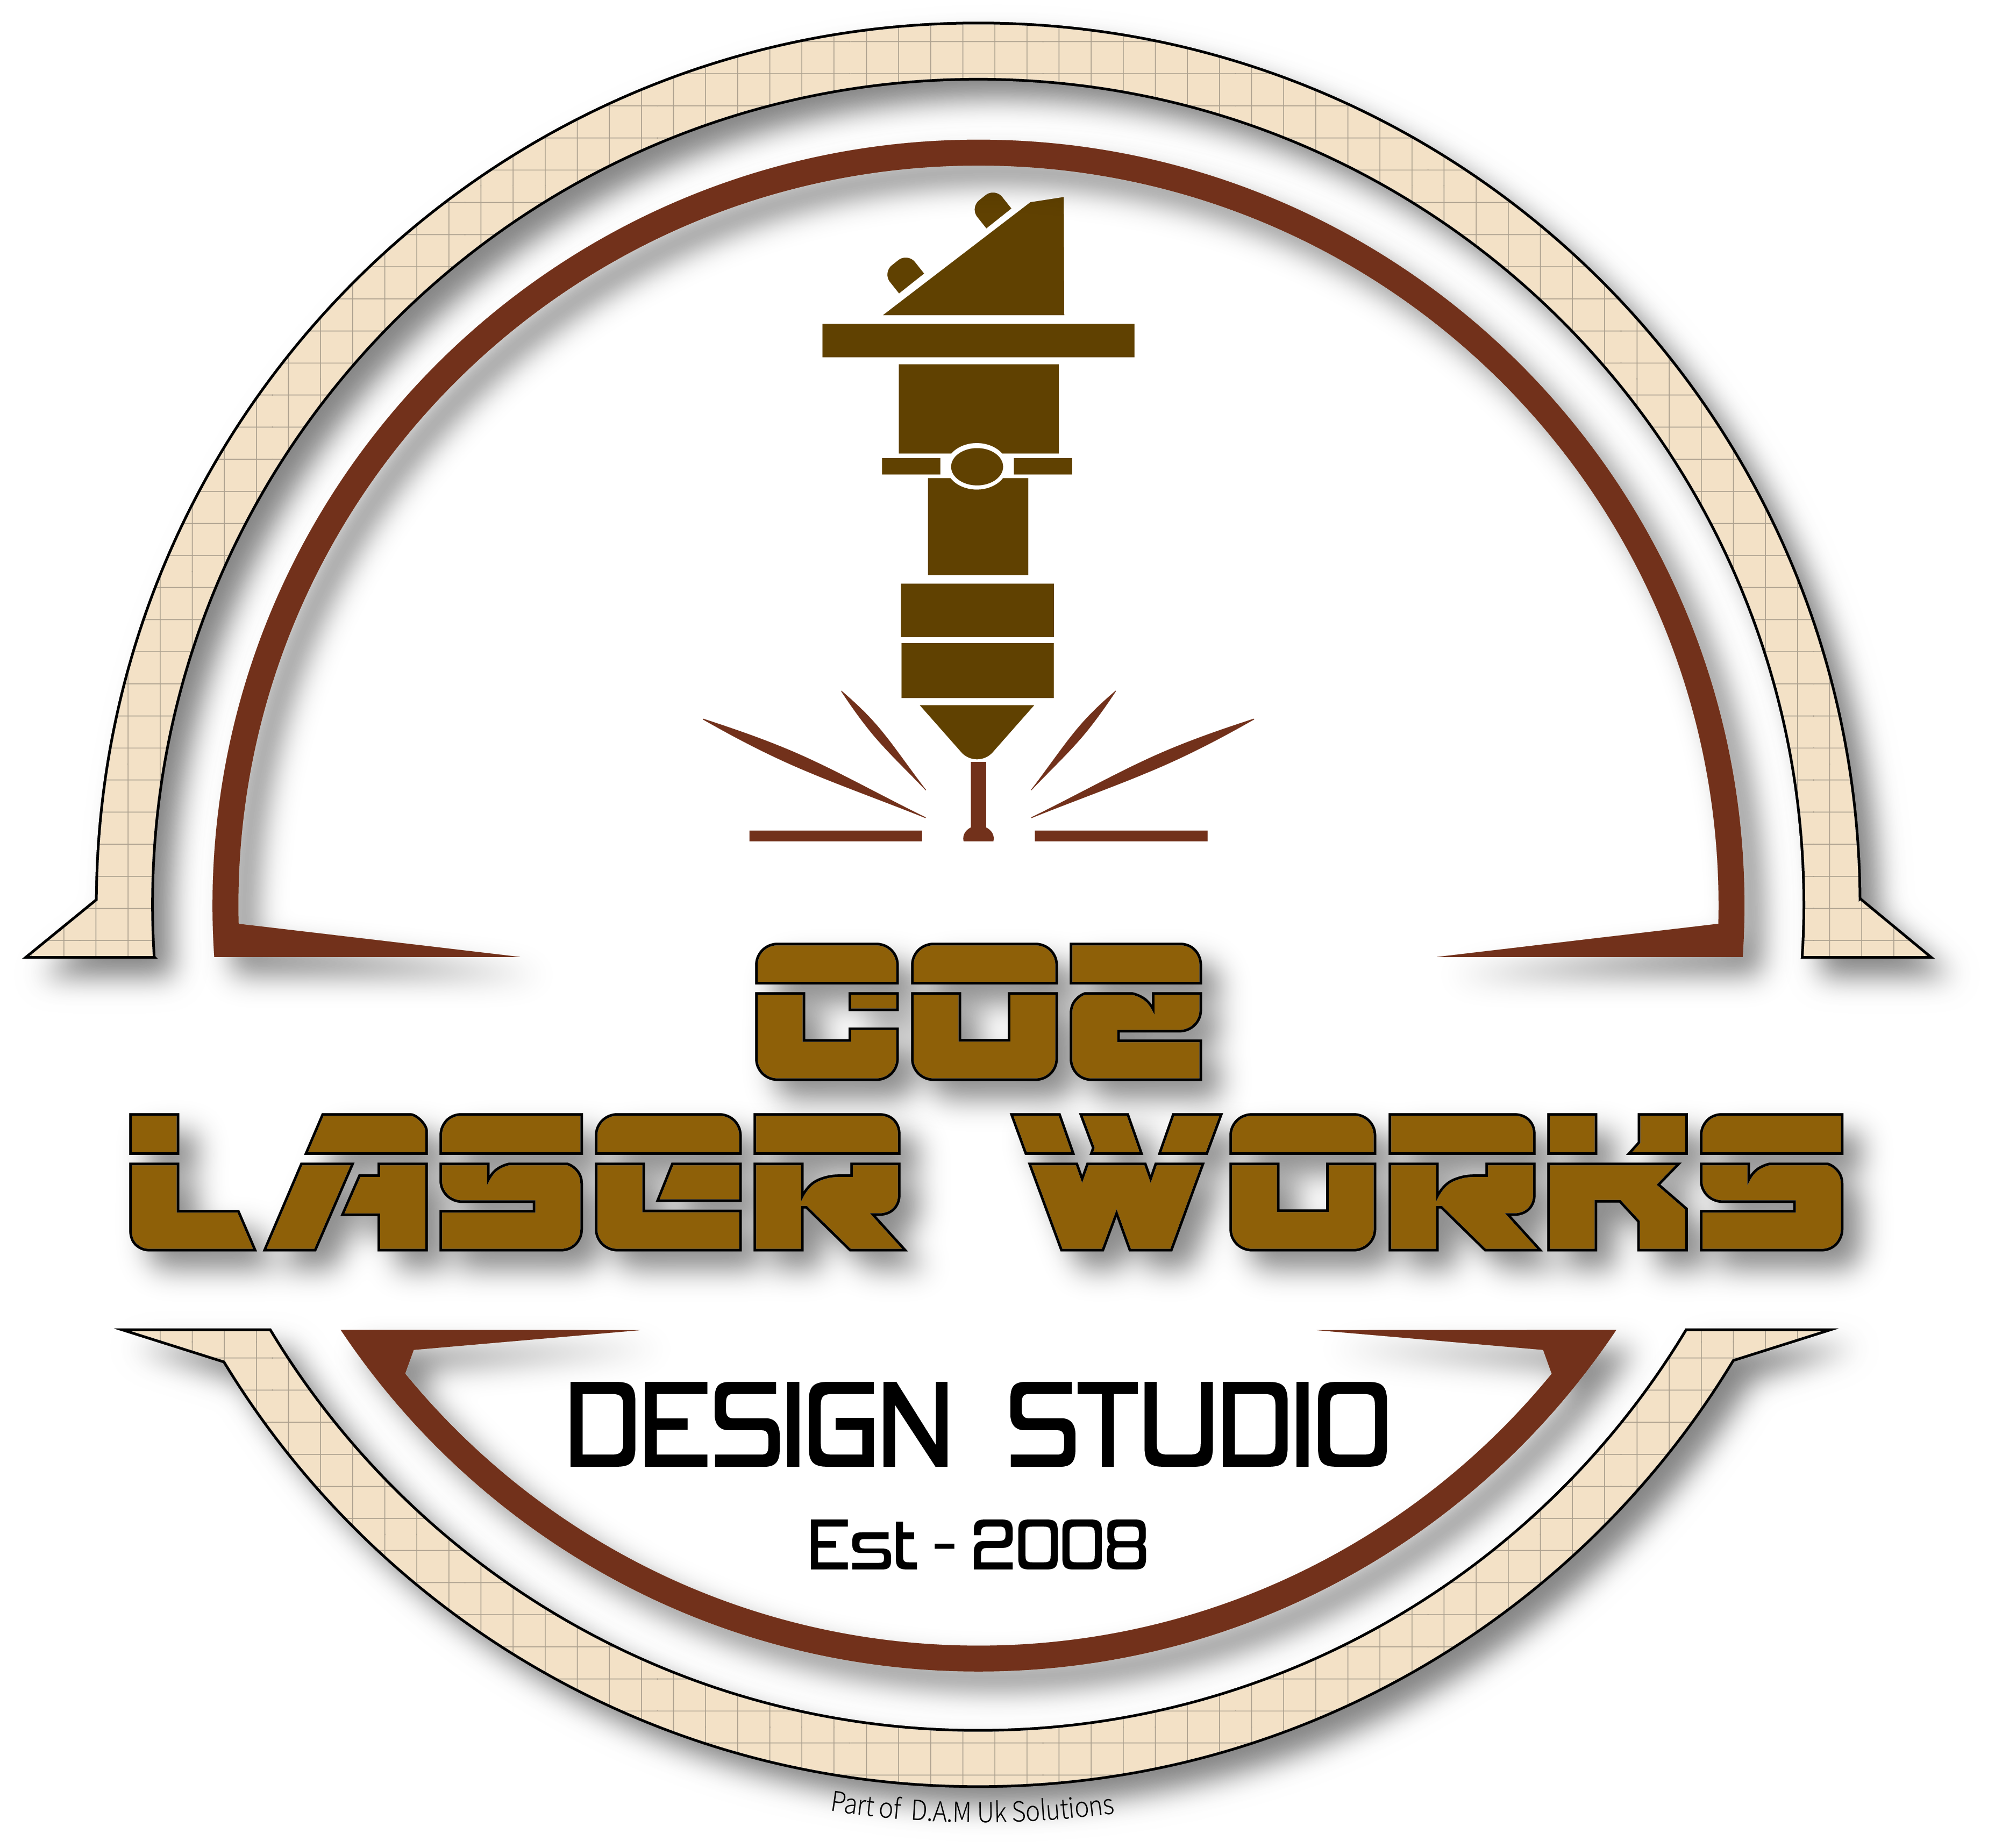 co2-laserworks round logo